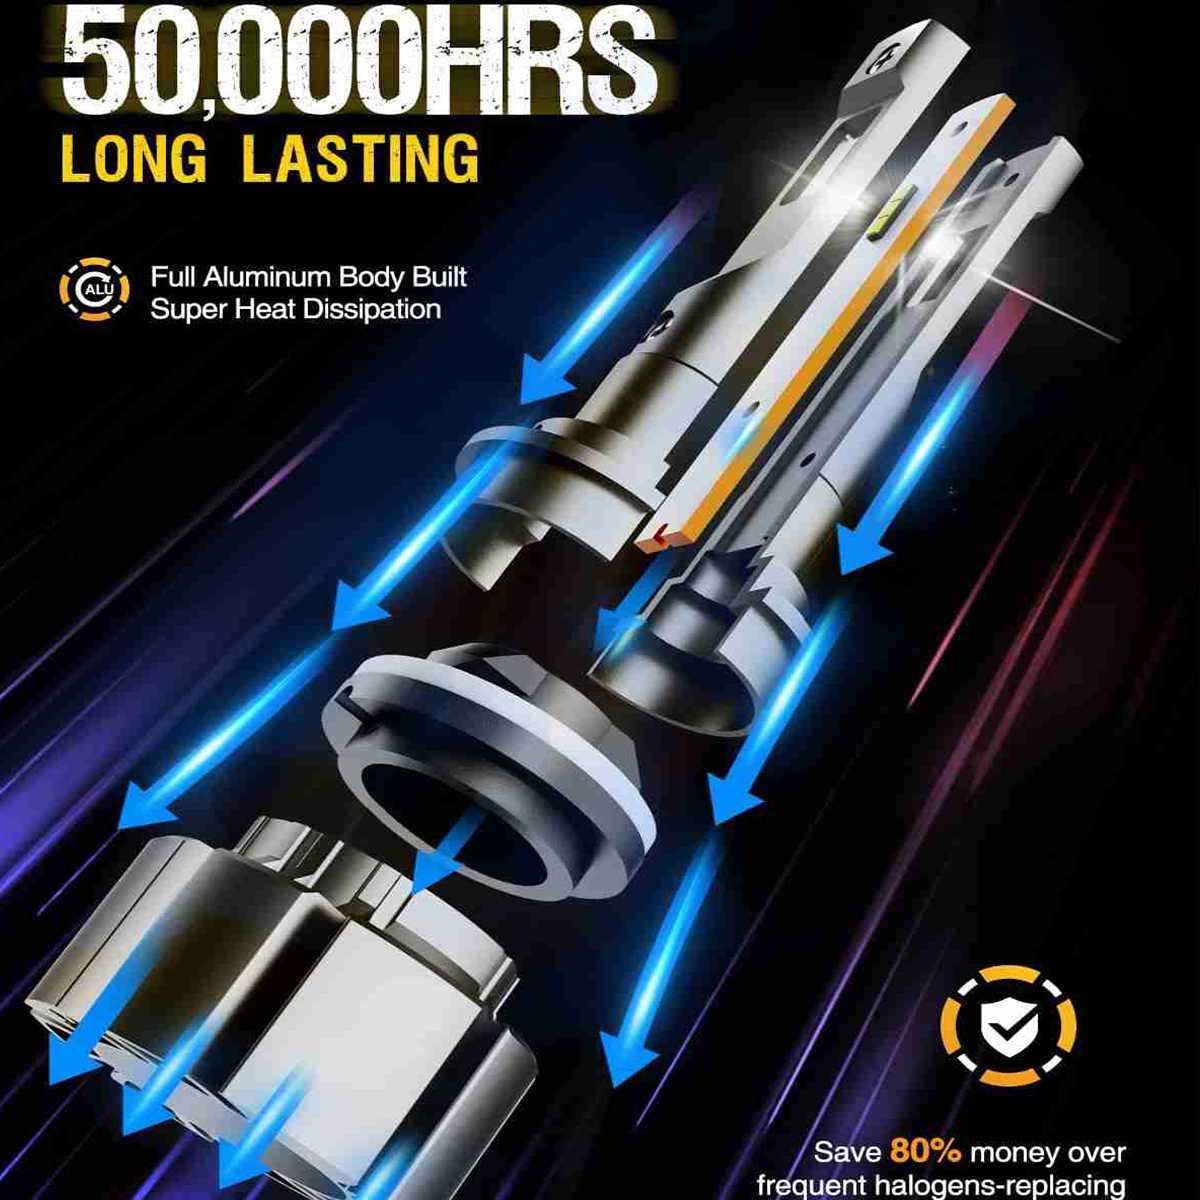 880 LED Fog Light Bulbs 10W 6000LM 6000K | 2 Bulbs Flashark